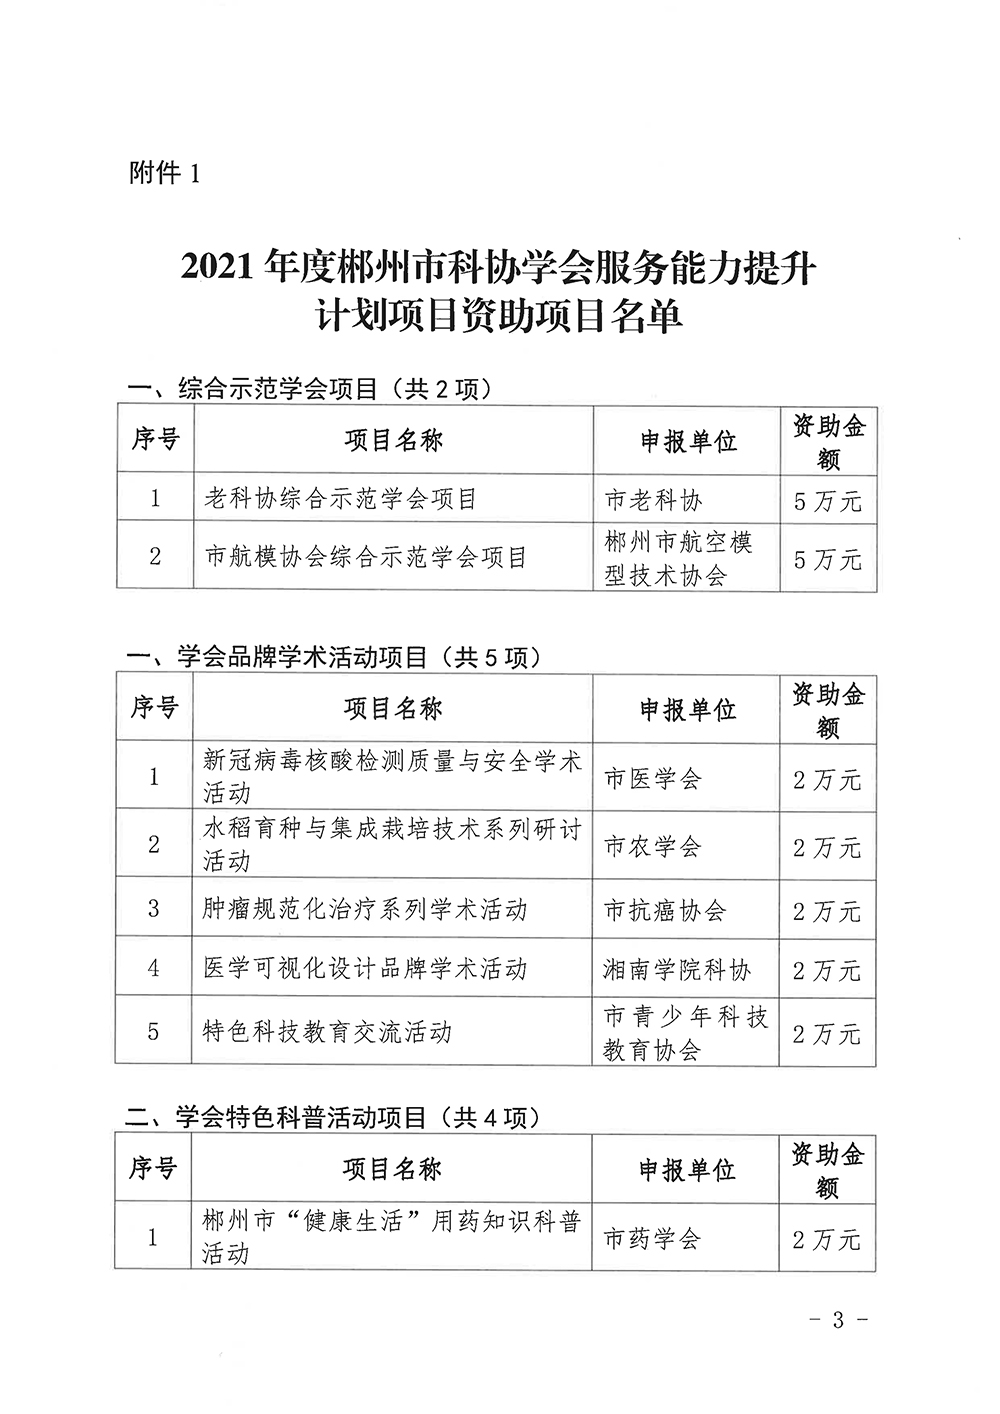 071310254750_0科协发〔2021〕19号关于公布2021年度郴州市科协学会服务能力提升计划项目评审结果的通知_3.jpg